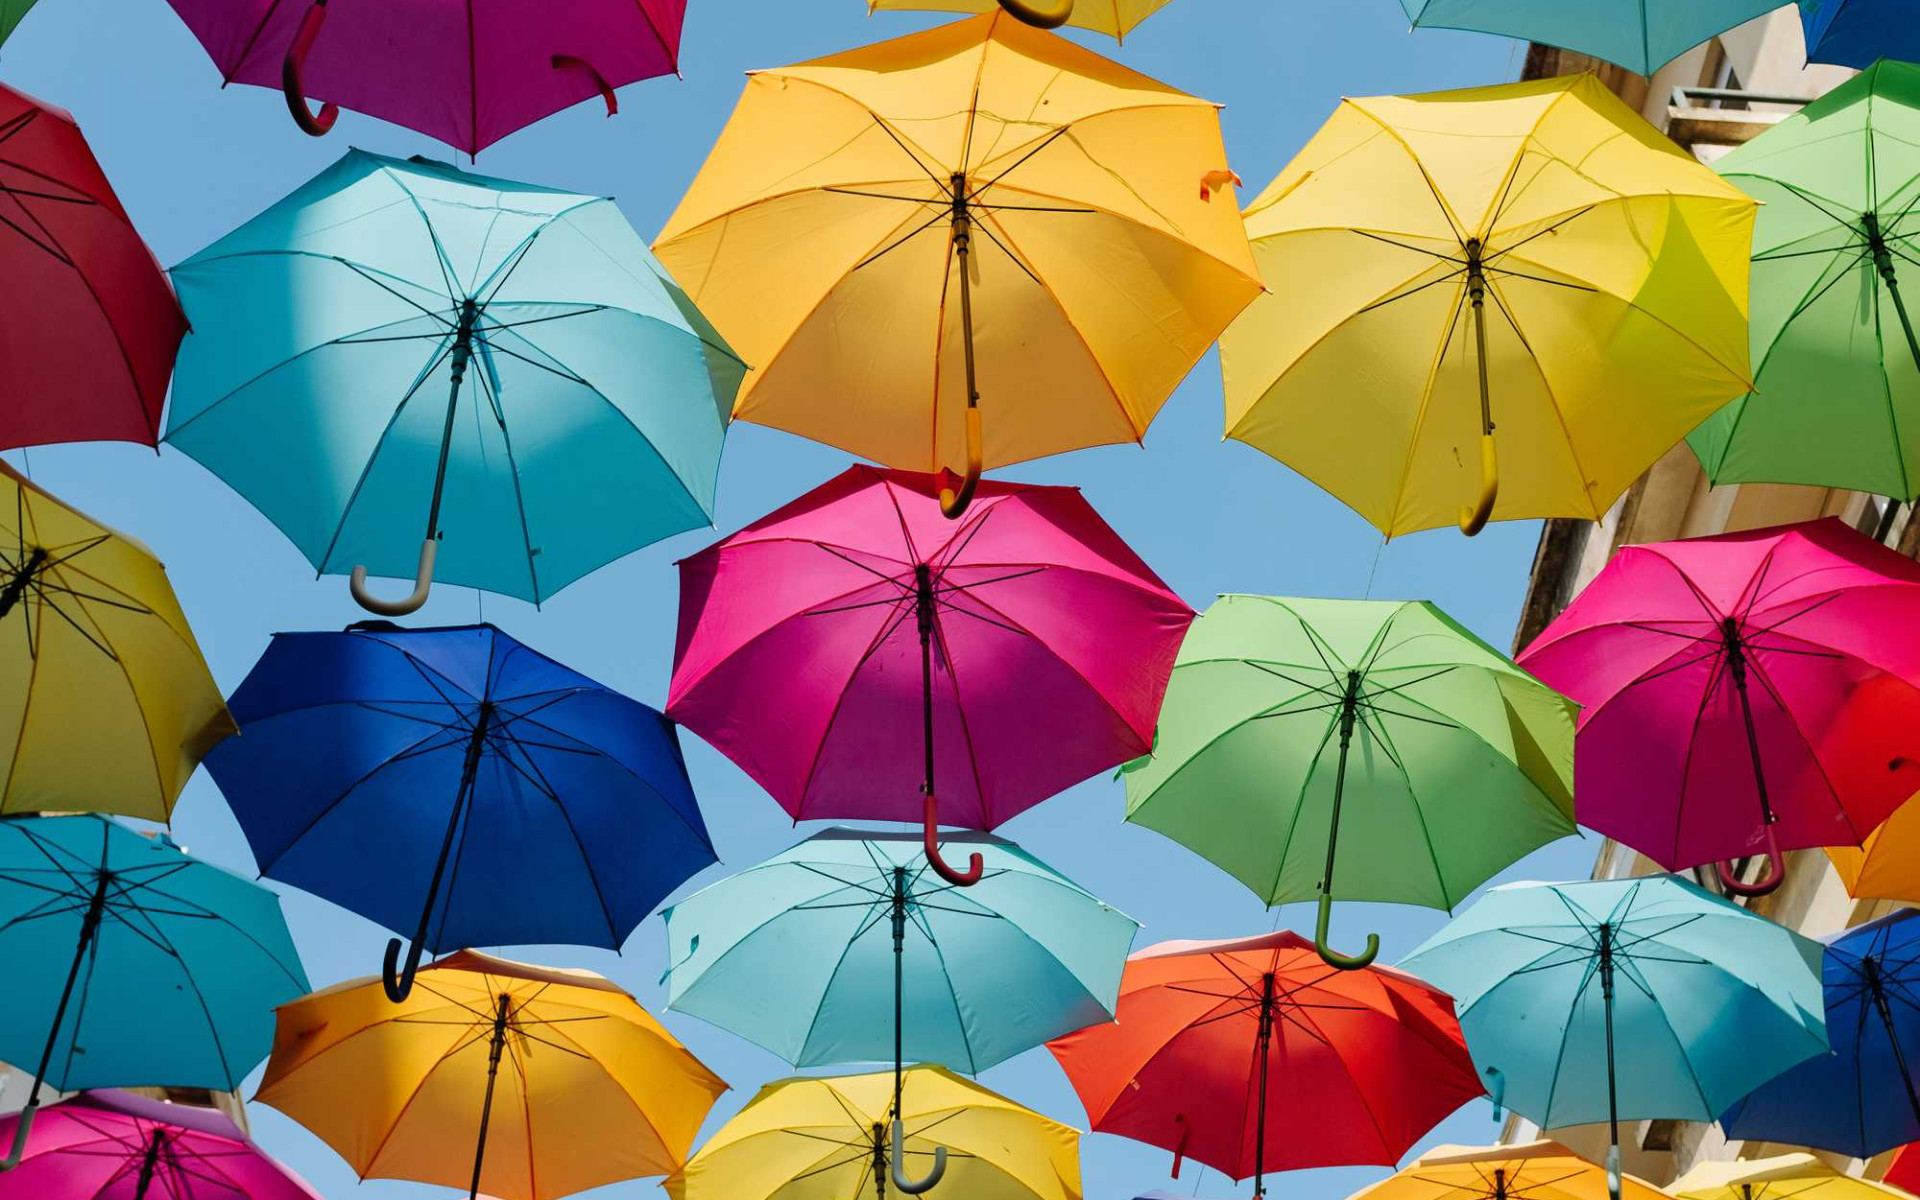 挂在街道上空的七彩雨伞的创意街景电脑壁纸